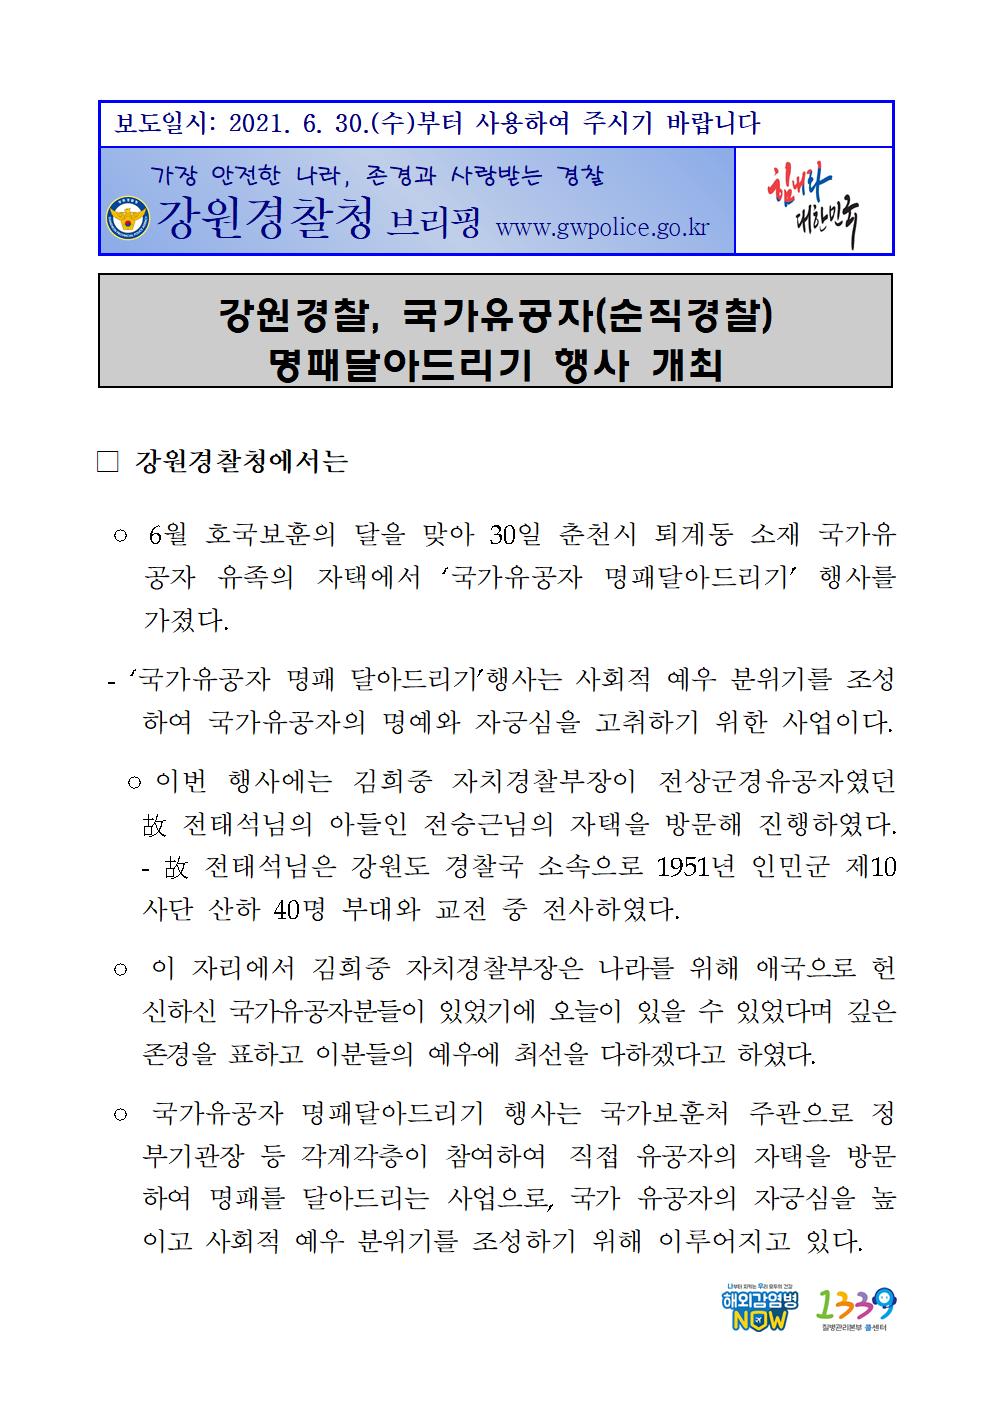 강원경찰, 국가유공자 명퍠달아드리기 행사-강원경찰, 국가유공자 명패달아드리기 001